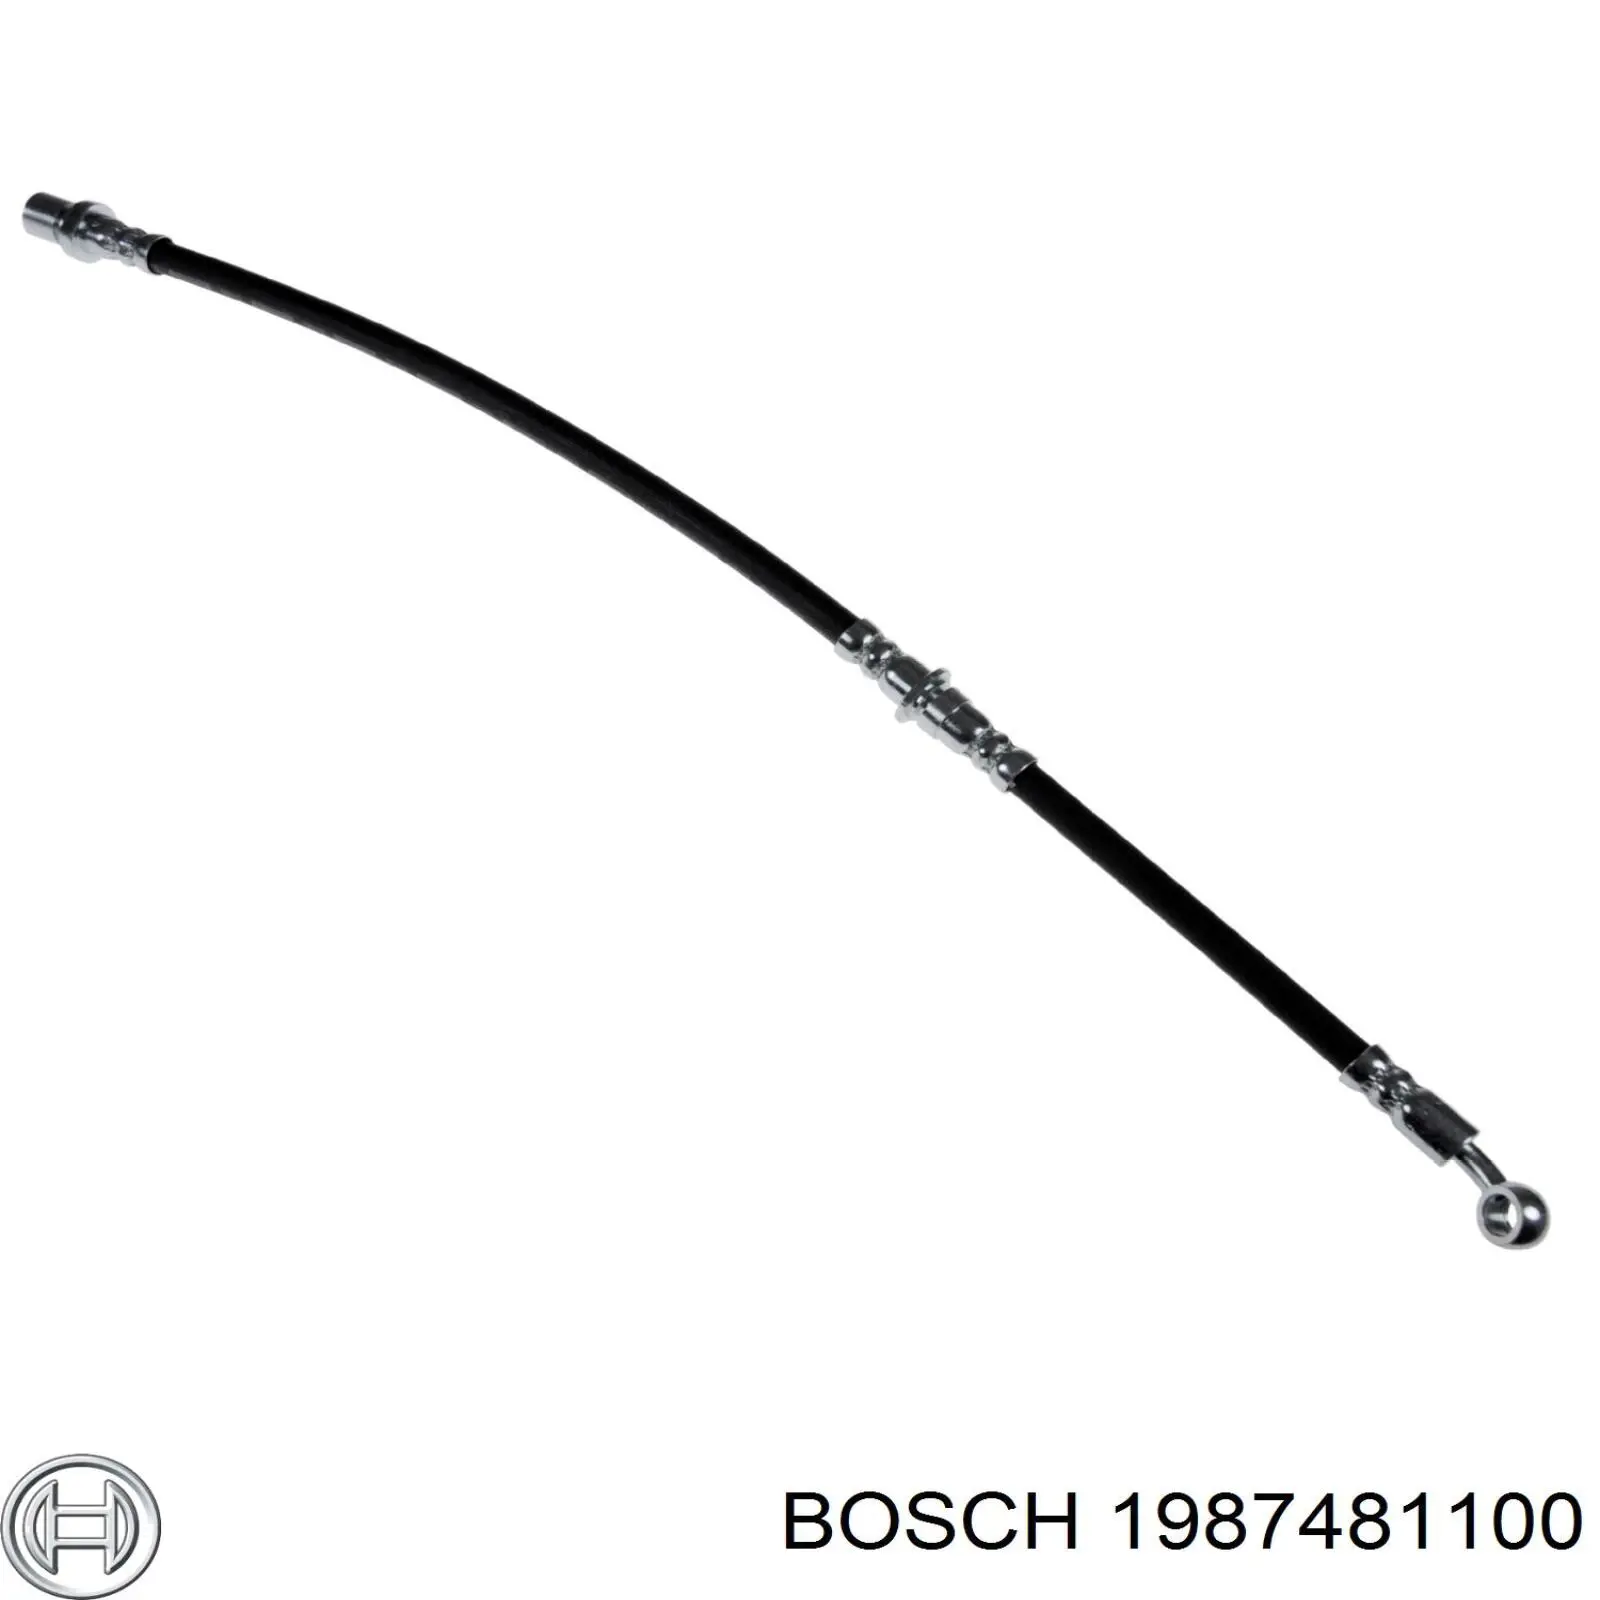 1987481100 Bosch